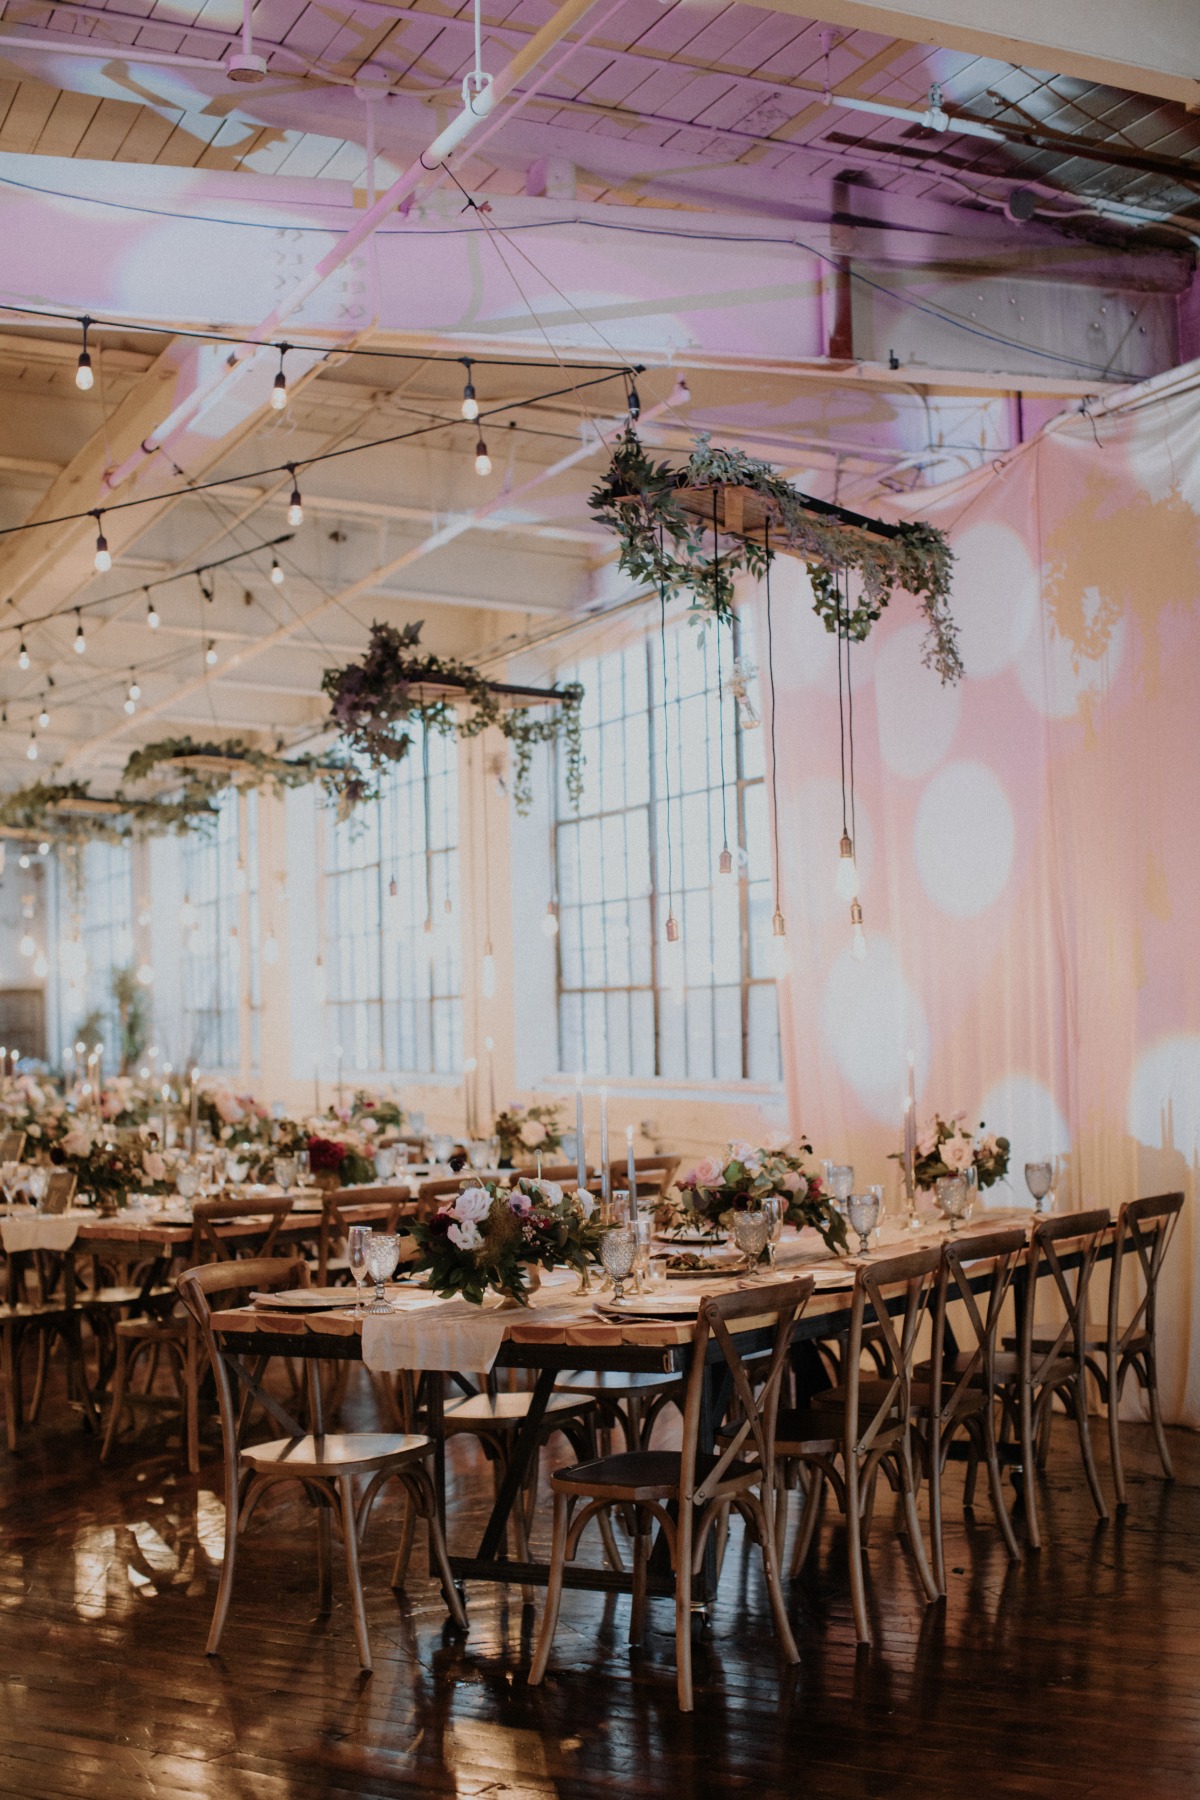 Industrial chic wedding reception decor ideas